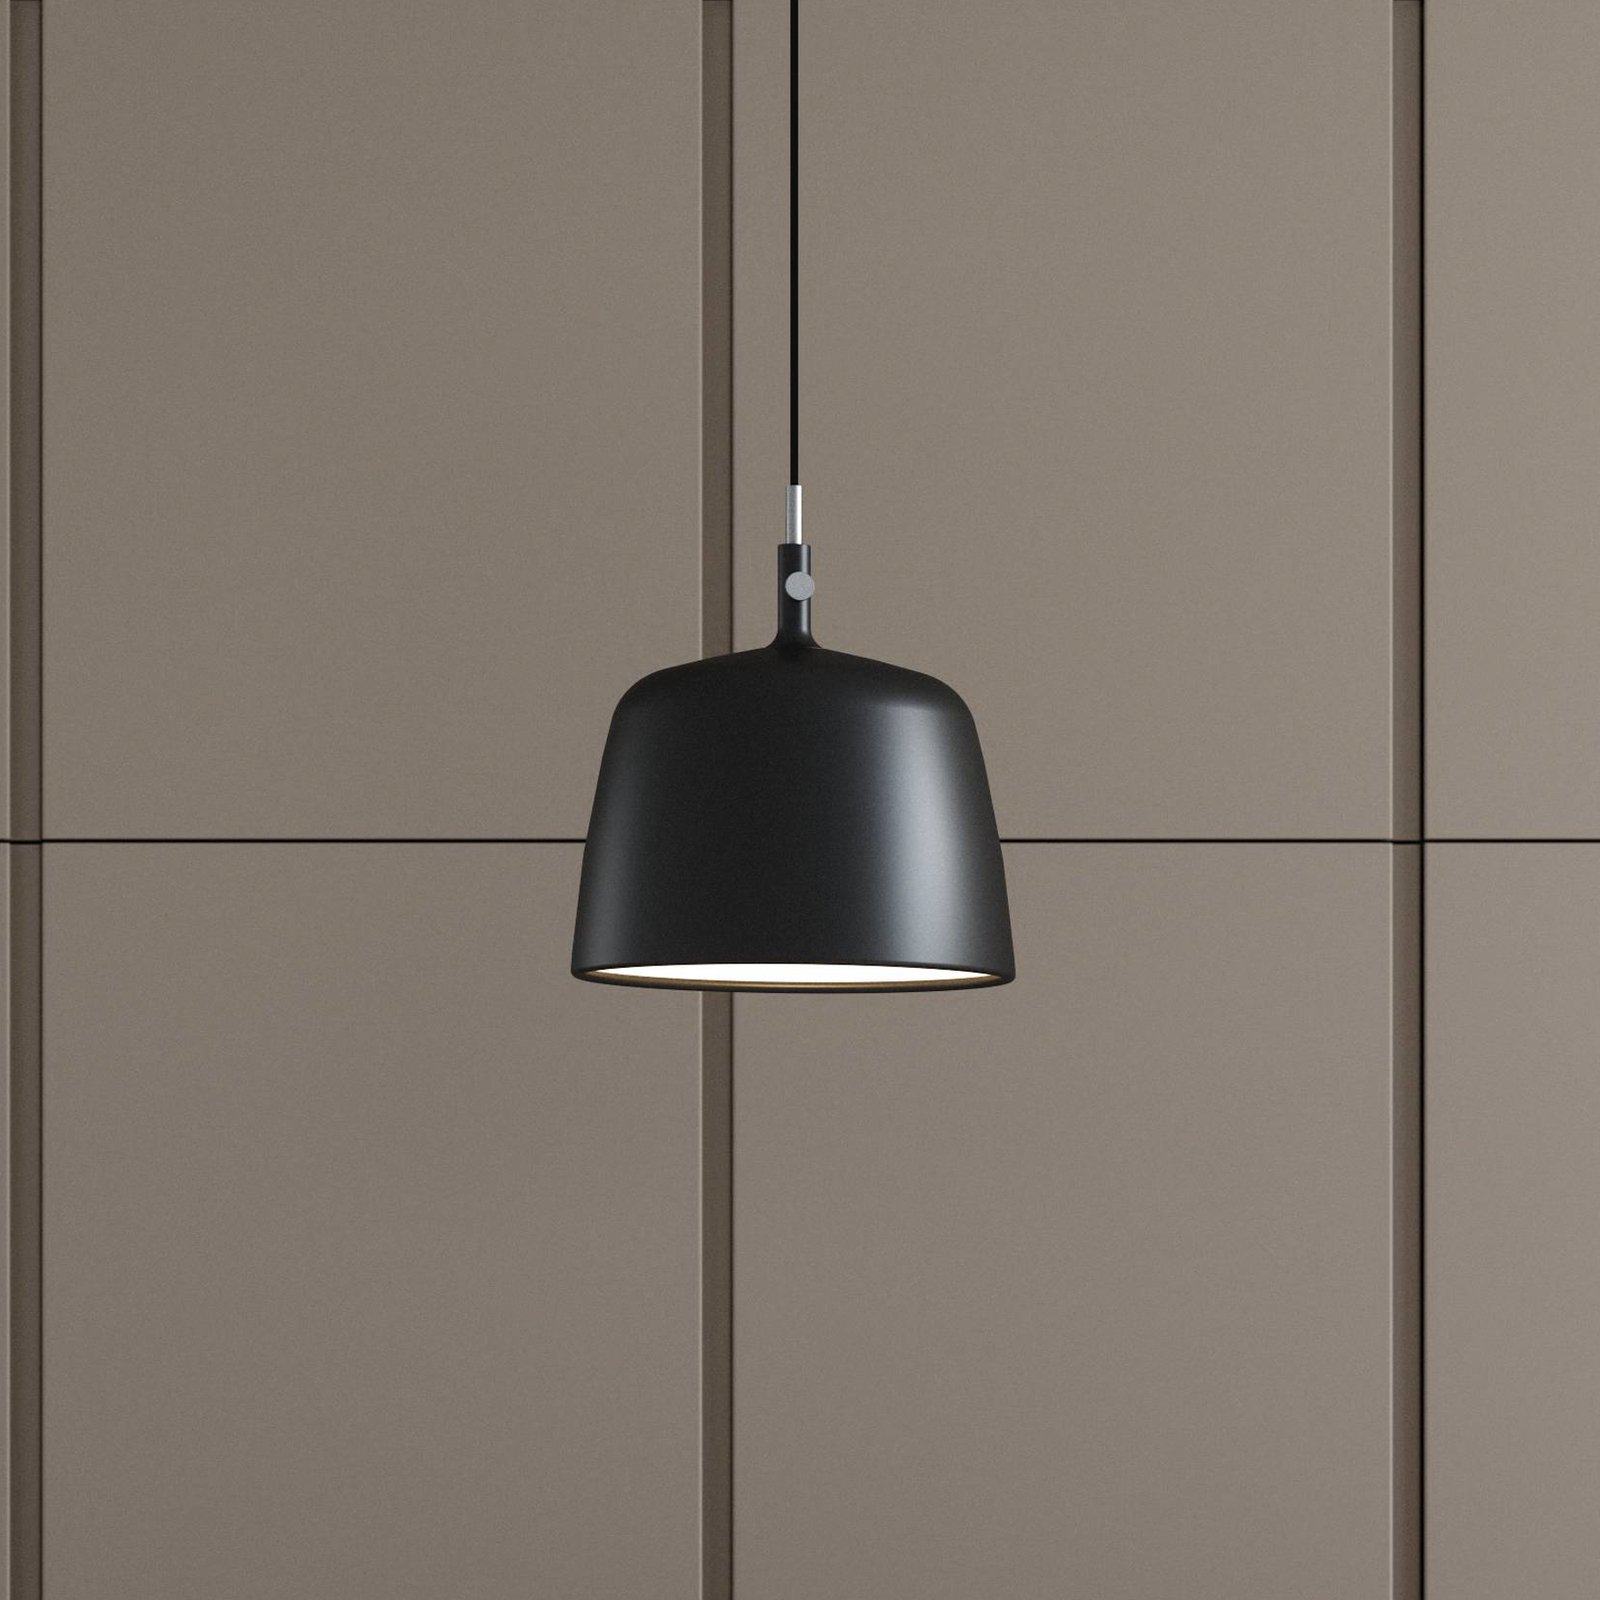 Norbi hængelampe, sort, Ø 30 cm